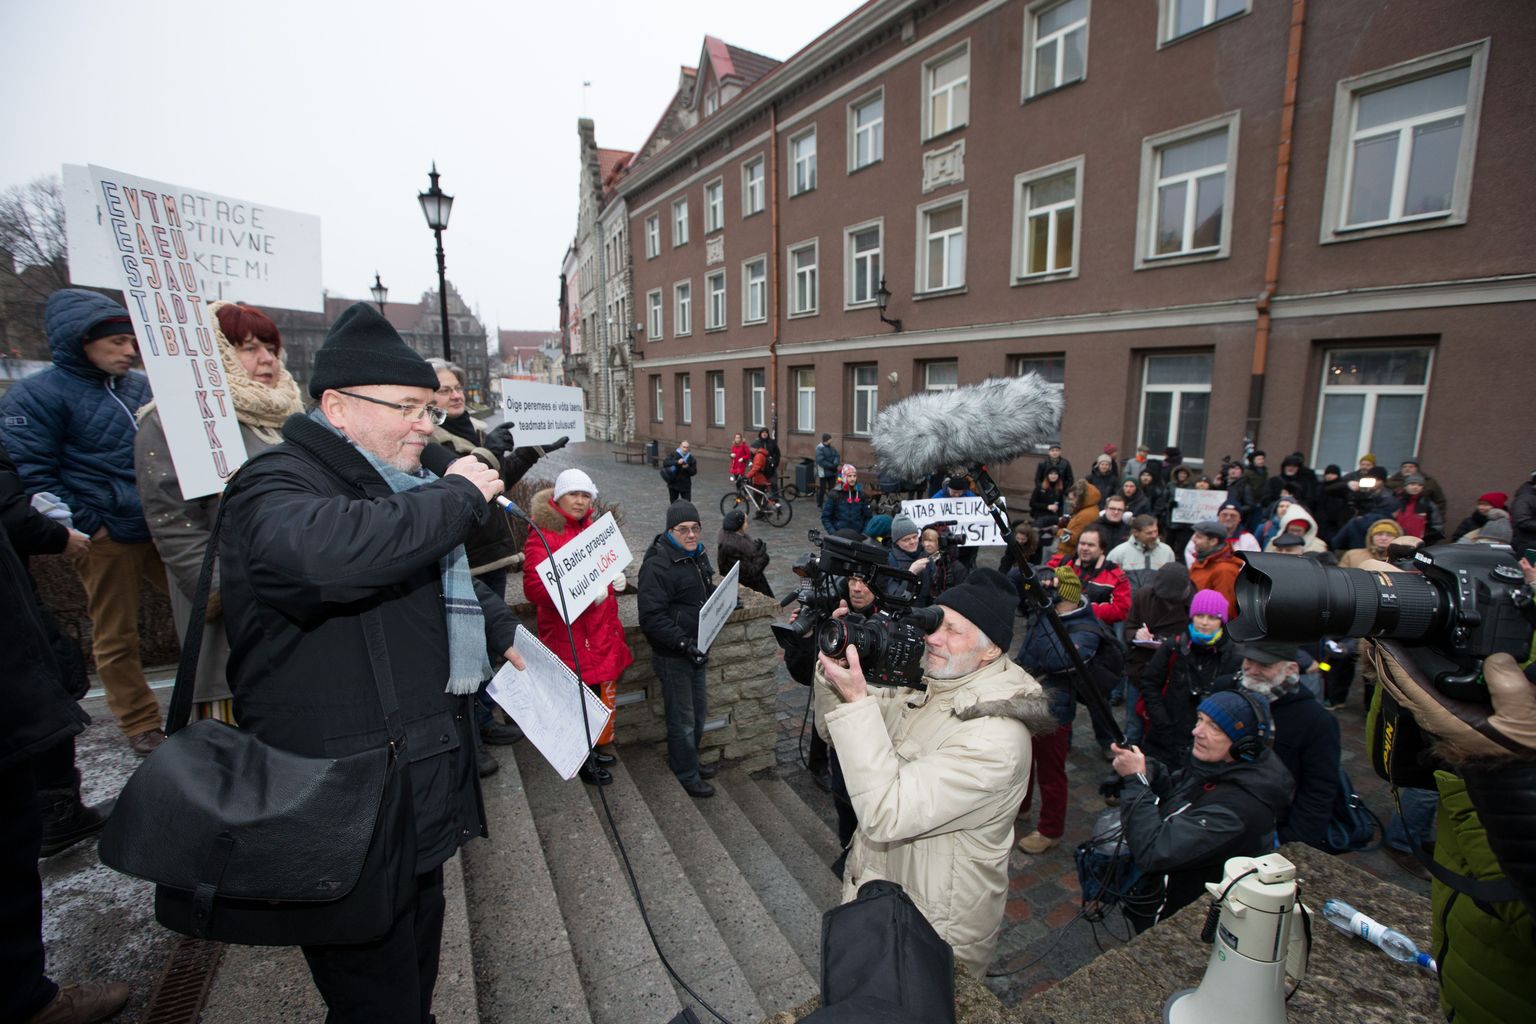 Rail Balticu vastane meeleavaldus 26. jaanuaril majandusministeeriumi ees. Protestimiitingul osales üle 300 inimese. Pildil mikrofoniga Igor Gräzin.